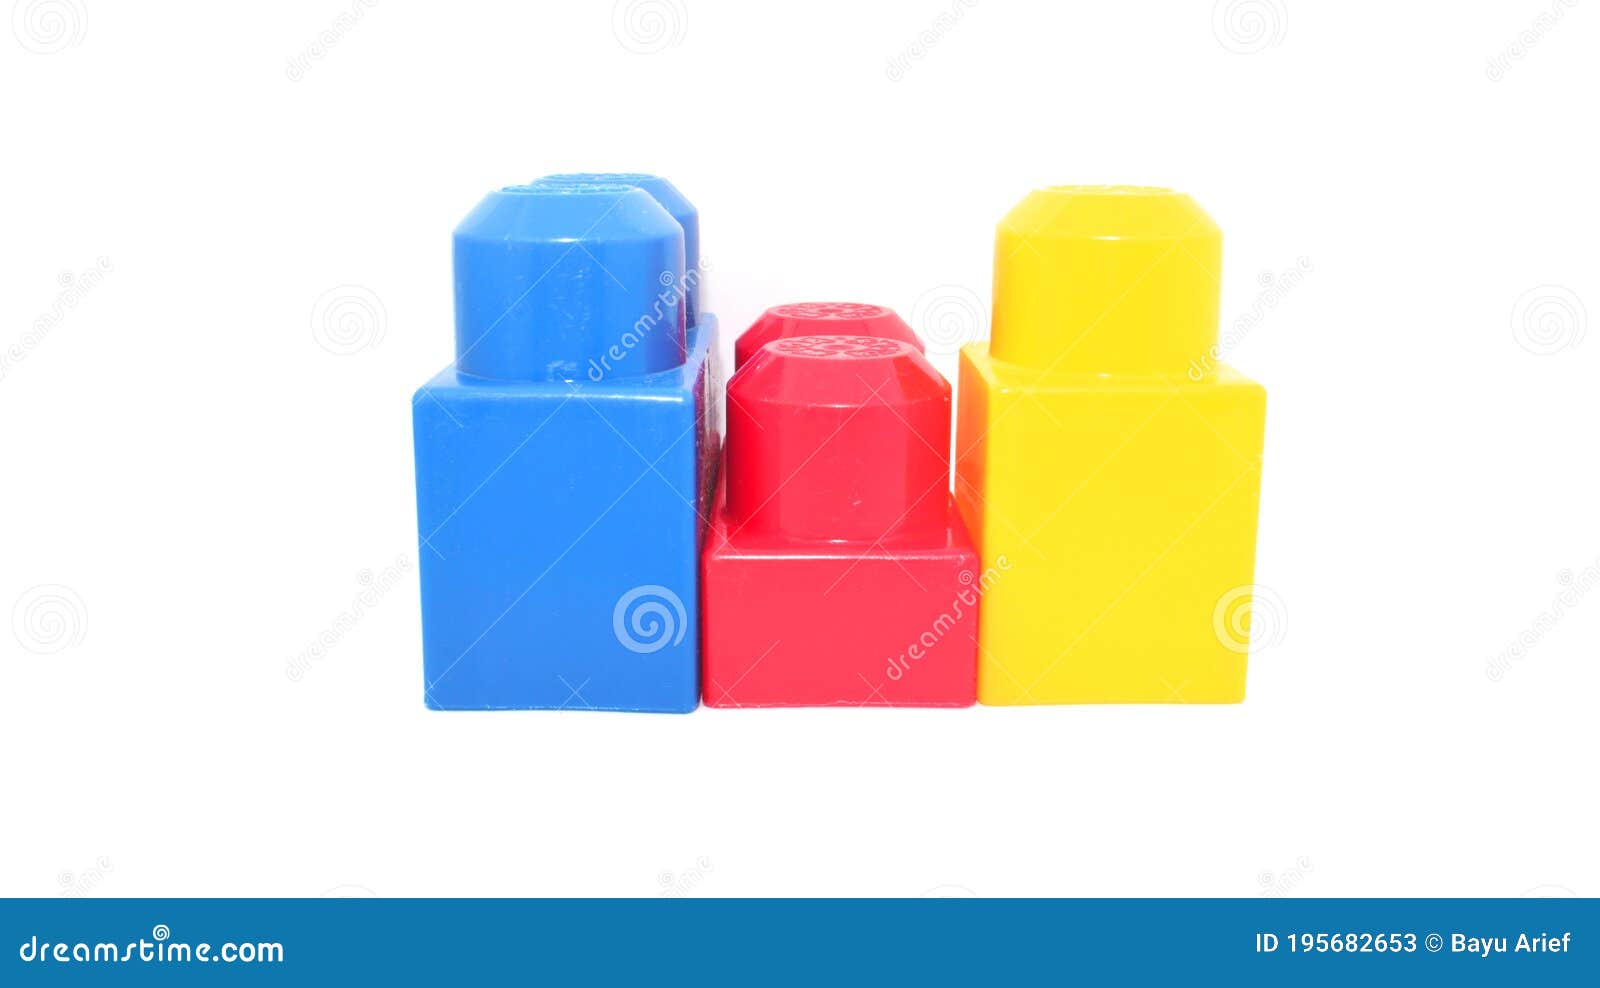 Une Ligne De Gros Lego Rouge Jaune Et Bleu Image stock - Image du chéri,  produisez: 195682653